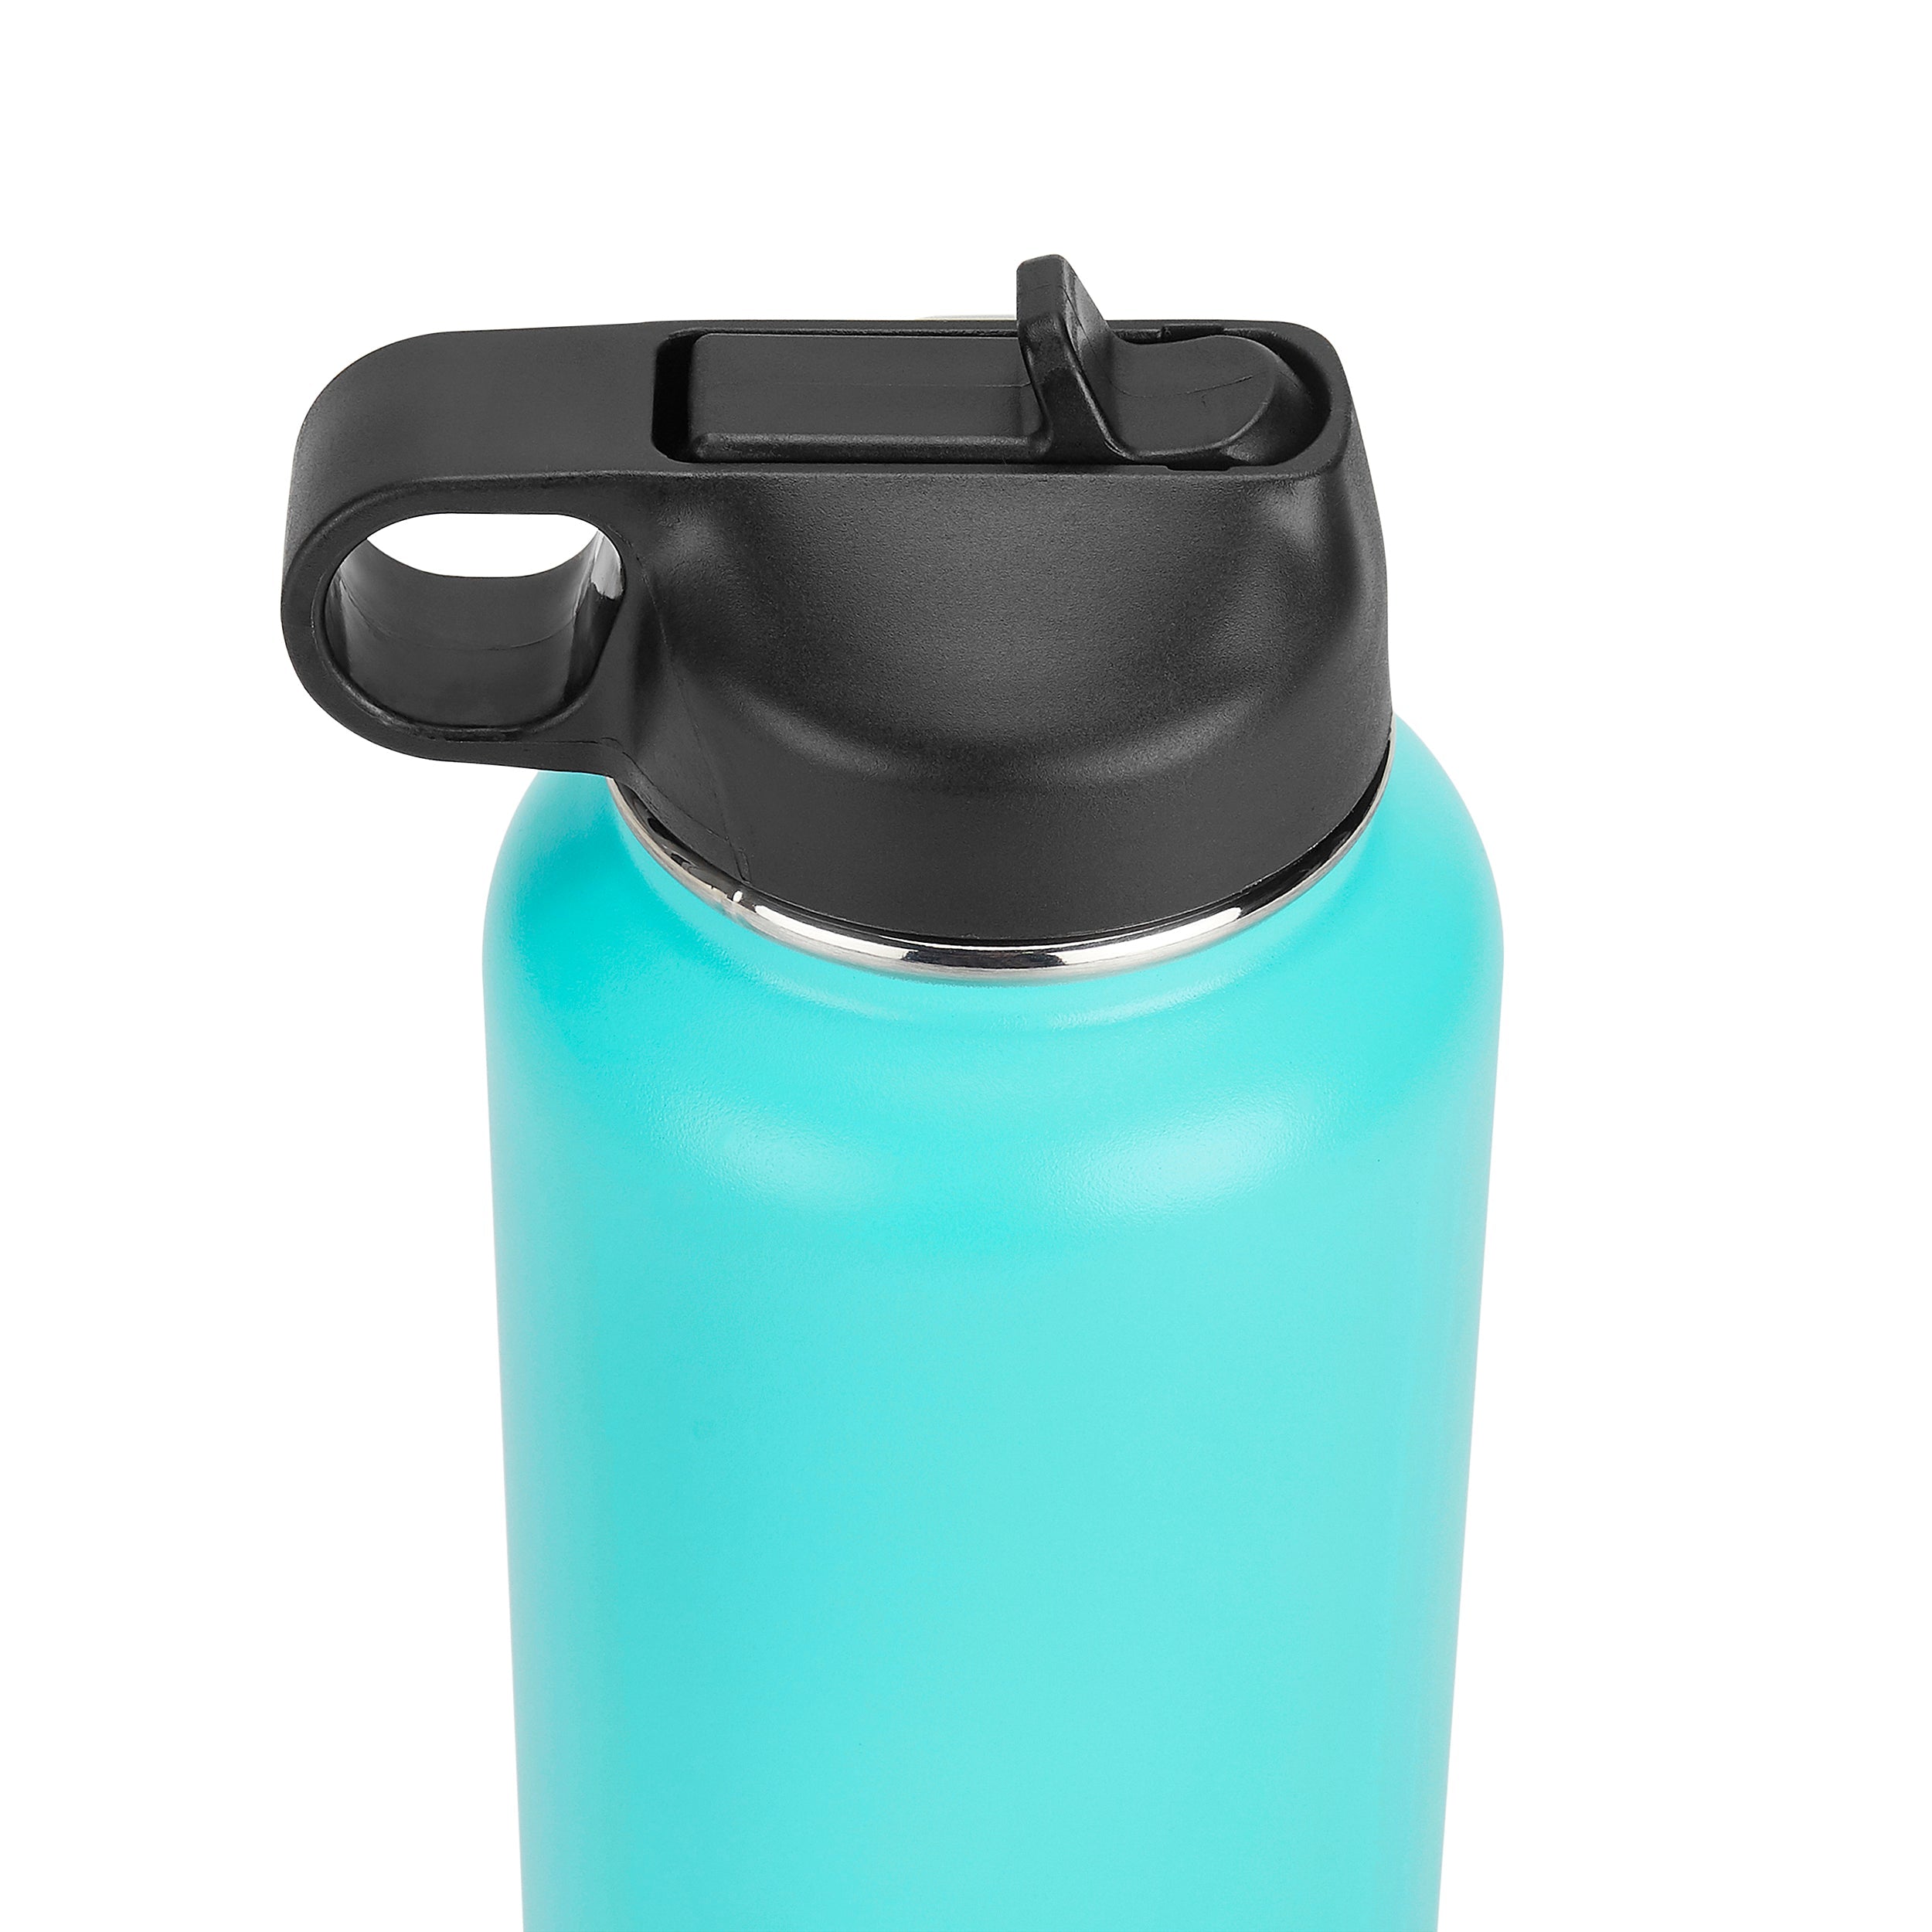 32oz Hydro Water Bottle for Friends